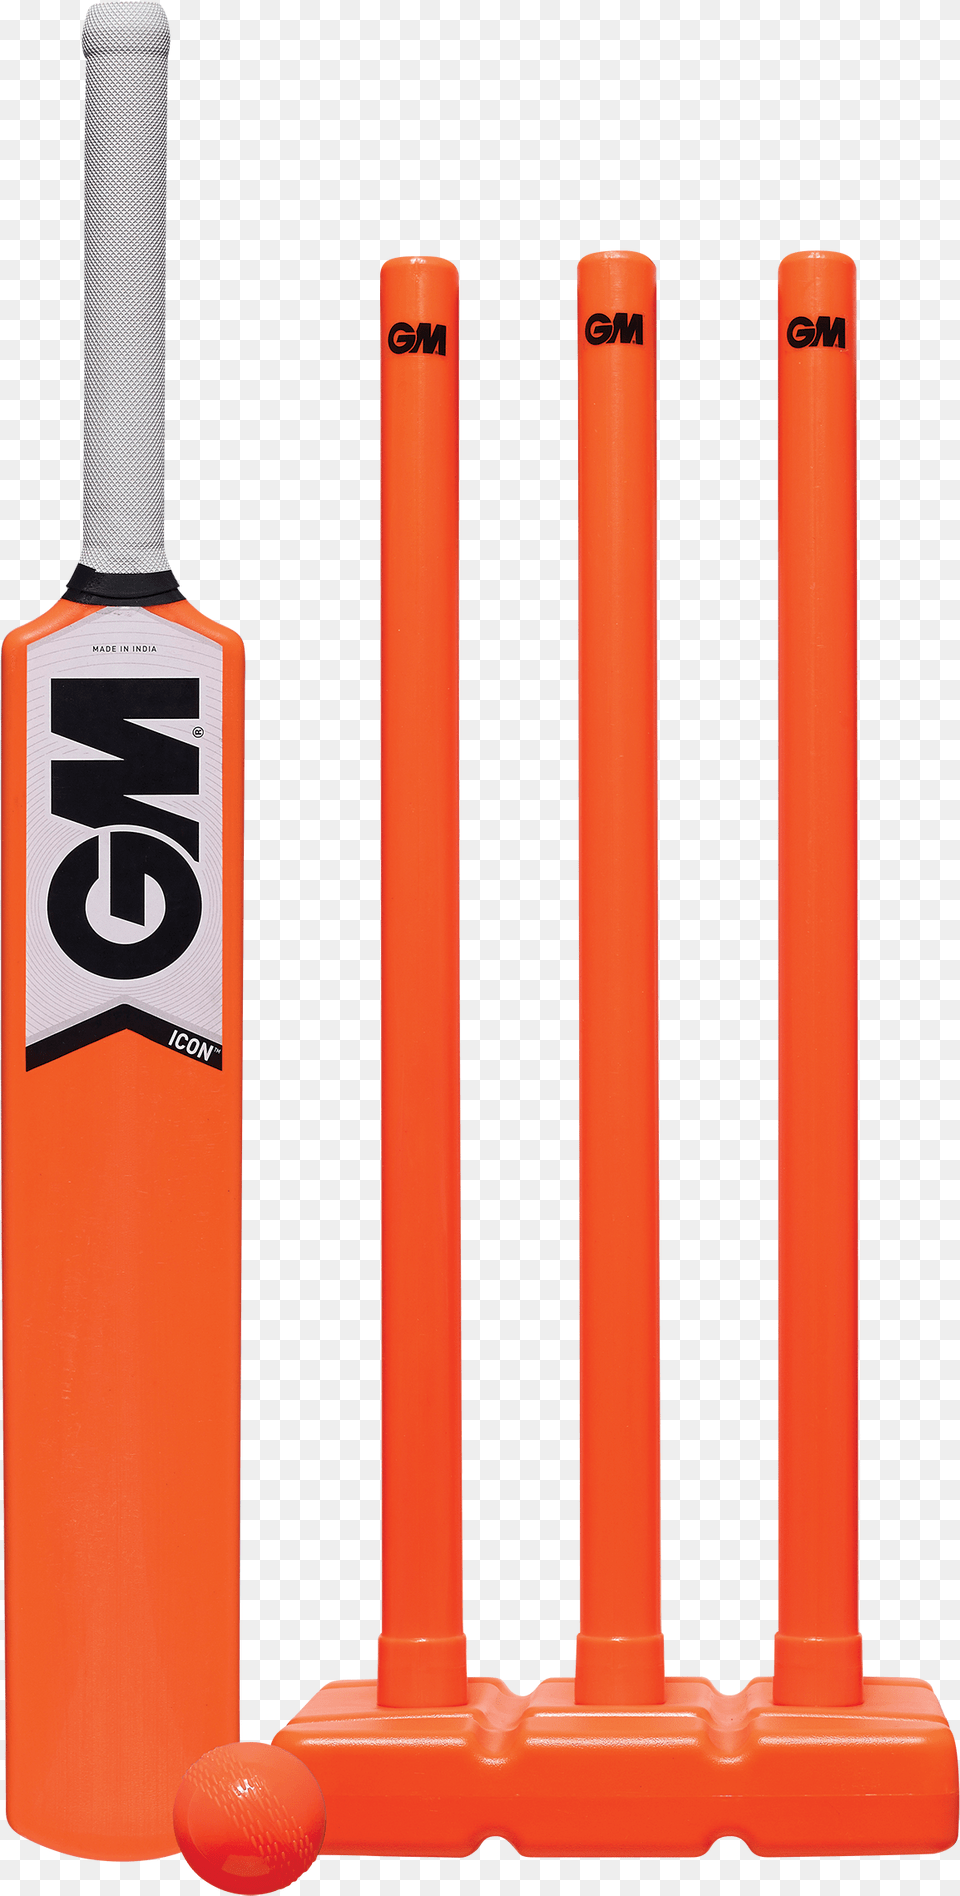 Cricket Bat Vector Plastic Cricket Bat And Ball, Baseball, Baseball Bat, Cricket Bat, Sport Free Png Download